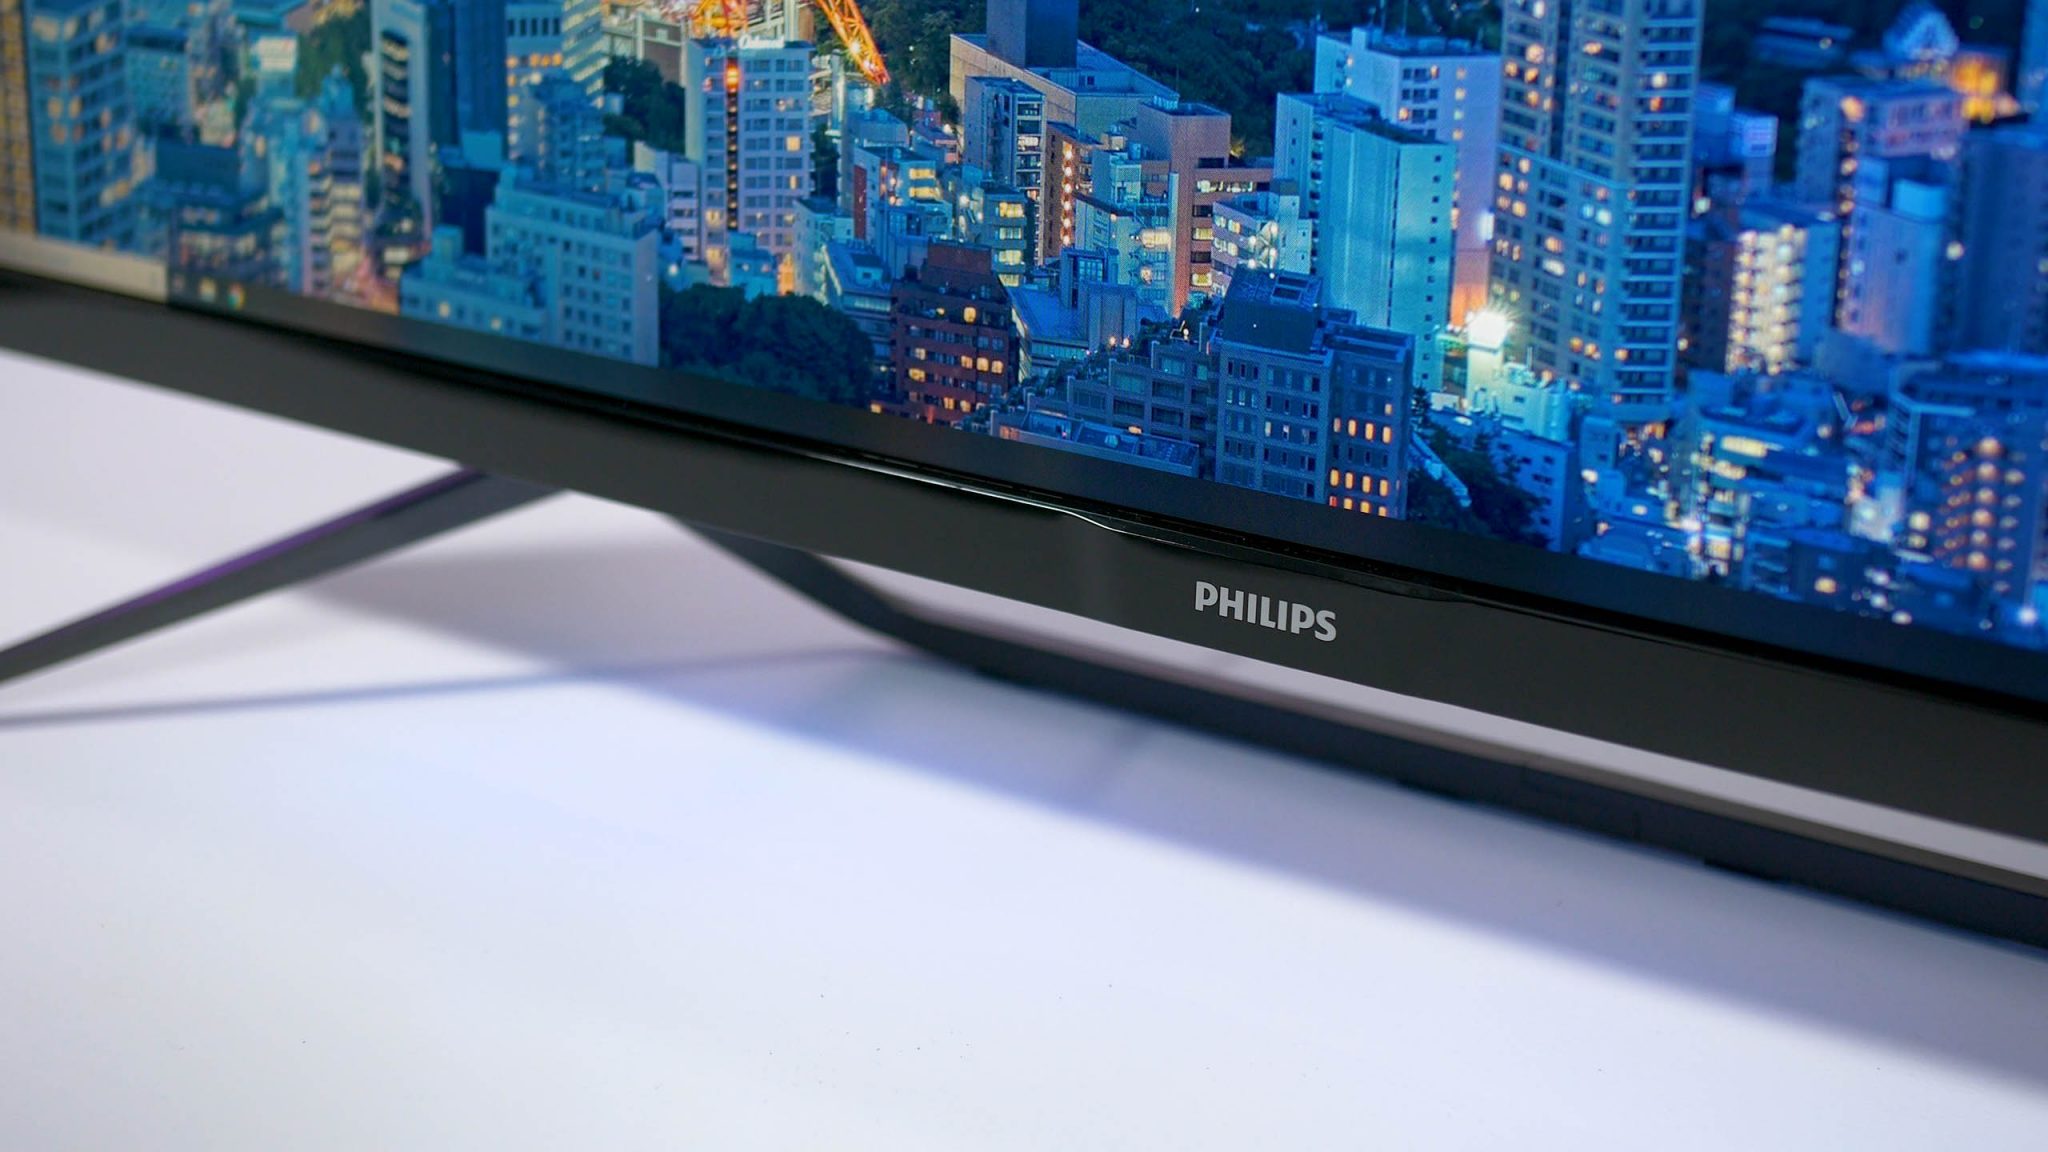 صورة شاشة Philips الجديدة 345M1CR Momentum تأتي لأجهزة الجيل القادم!